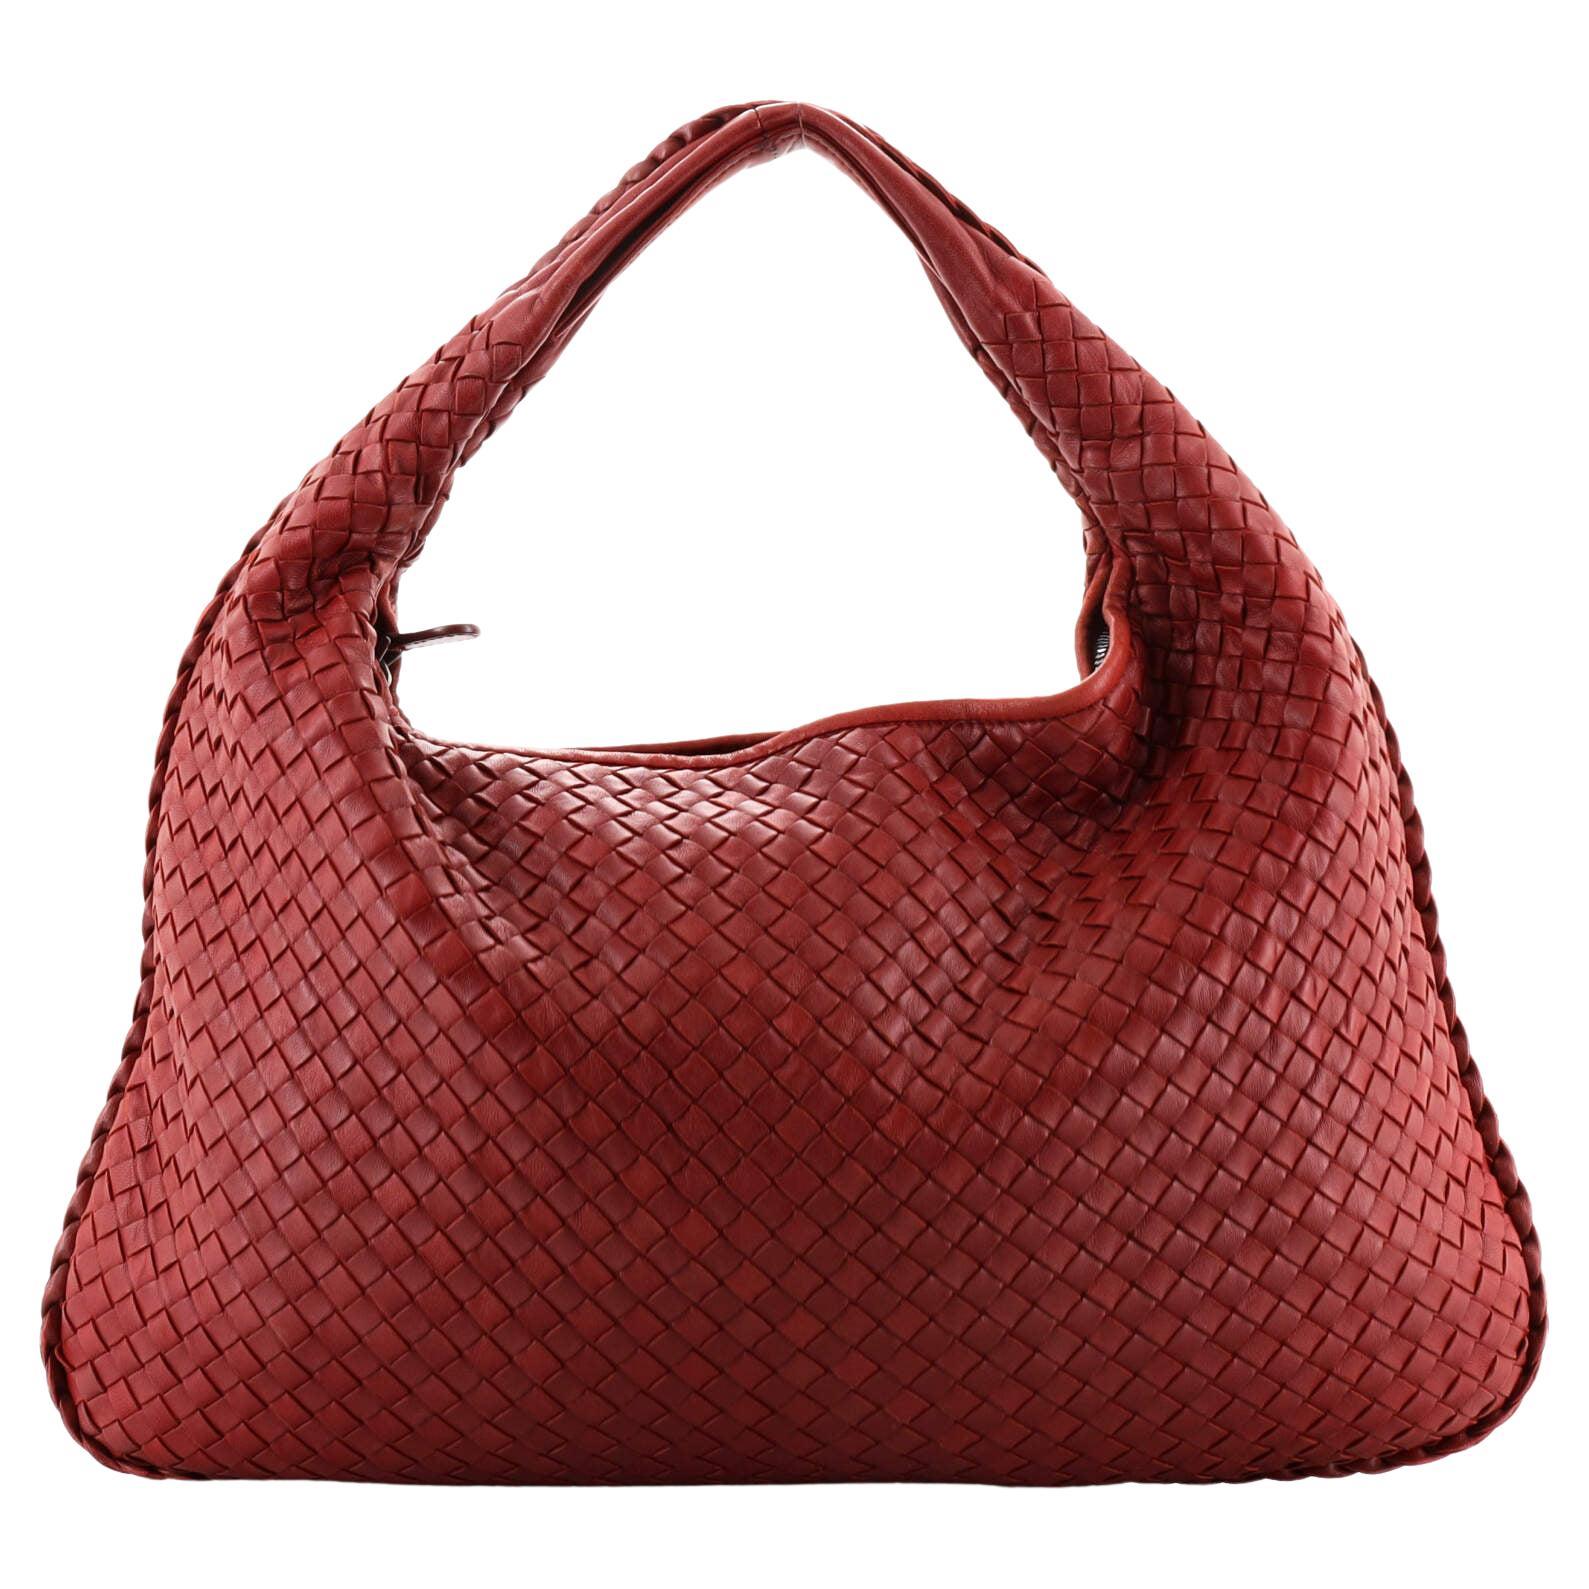 Bottega Veneta Bags Outlet - For Sale on 1stDibs | bottega veneta outlet  bags, borse bottega veneta outlet, bottega veneta bag outlet